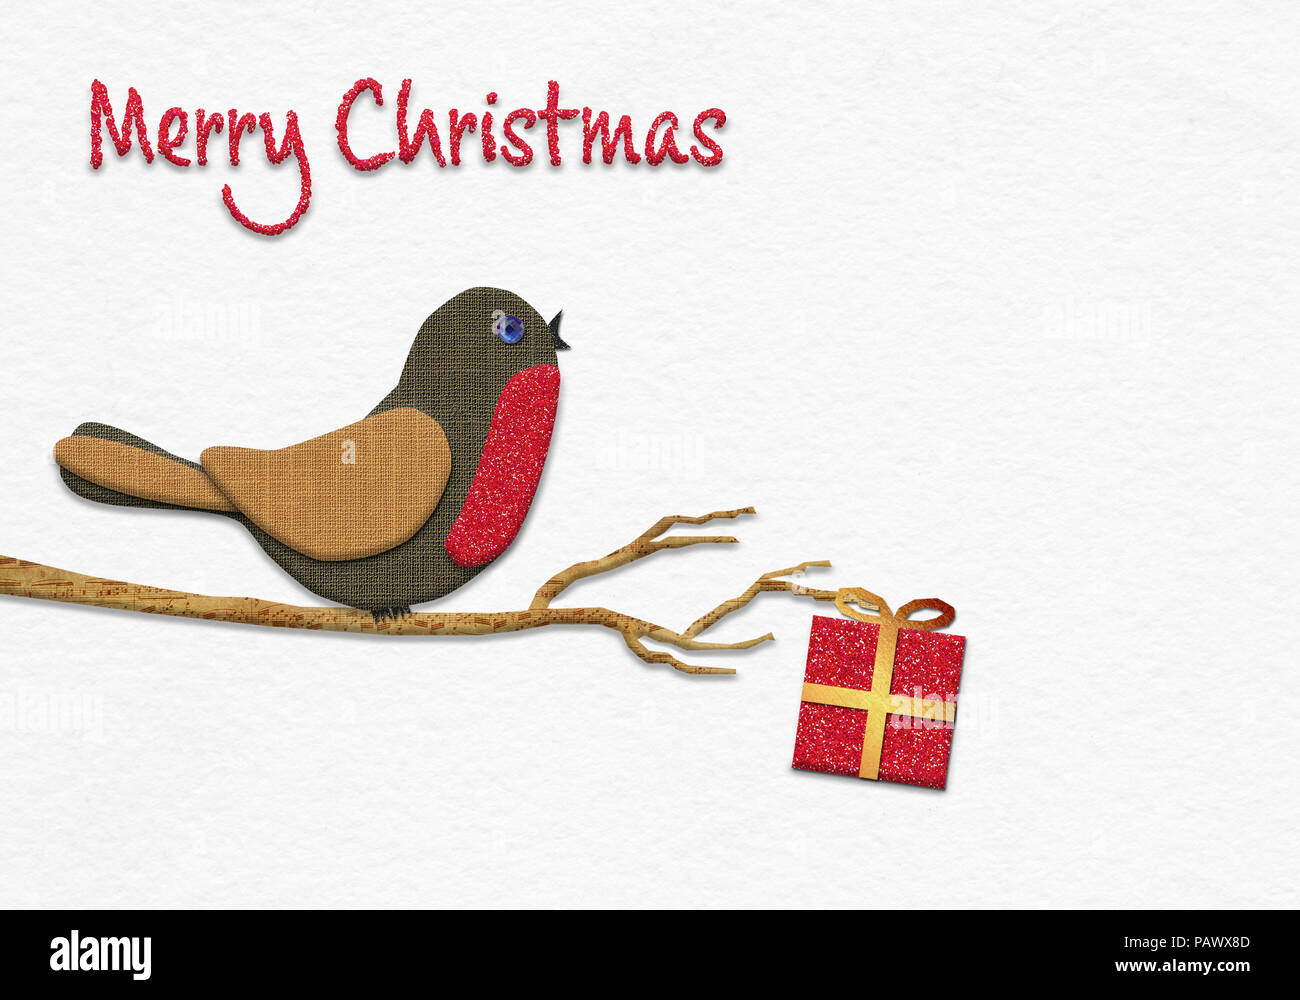 Frohe Weihnachten Nachricht, Weihnachten Robin handgefertigt aus Papier collage Stil Konzept Abbildung auf handgefertigte Wasser Farbe Papier Hintergrund Stockfoto